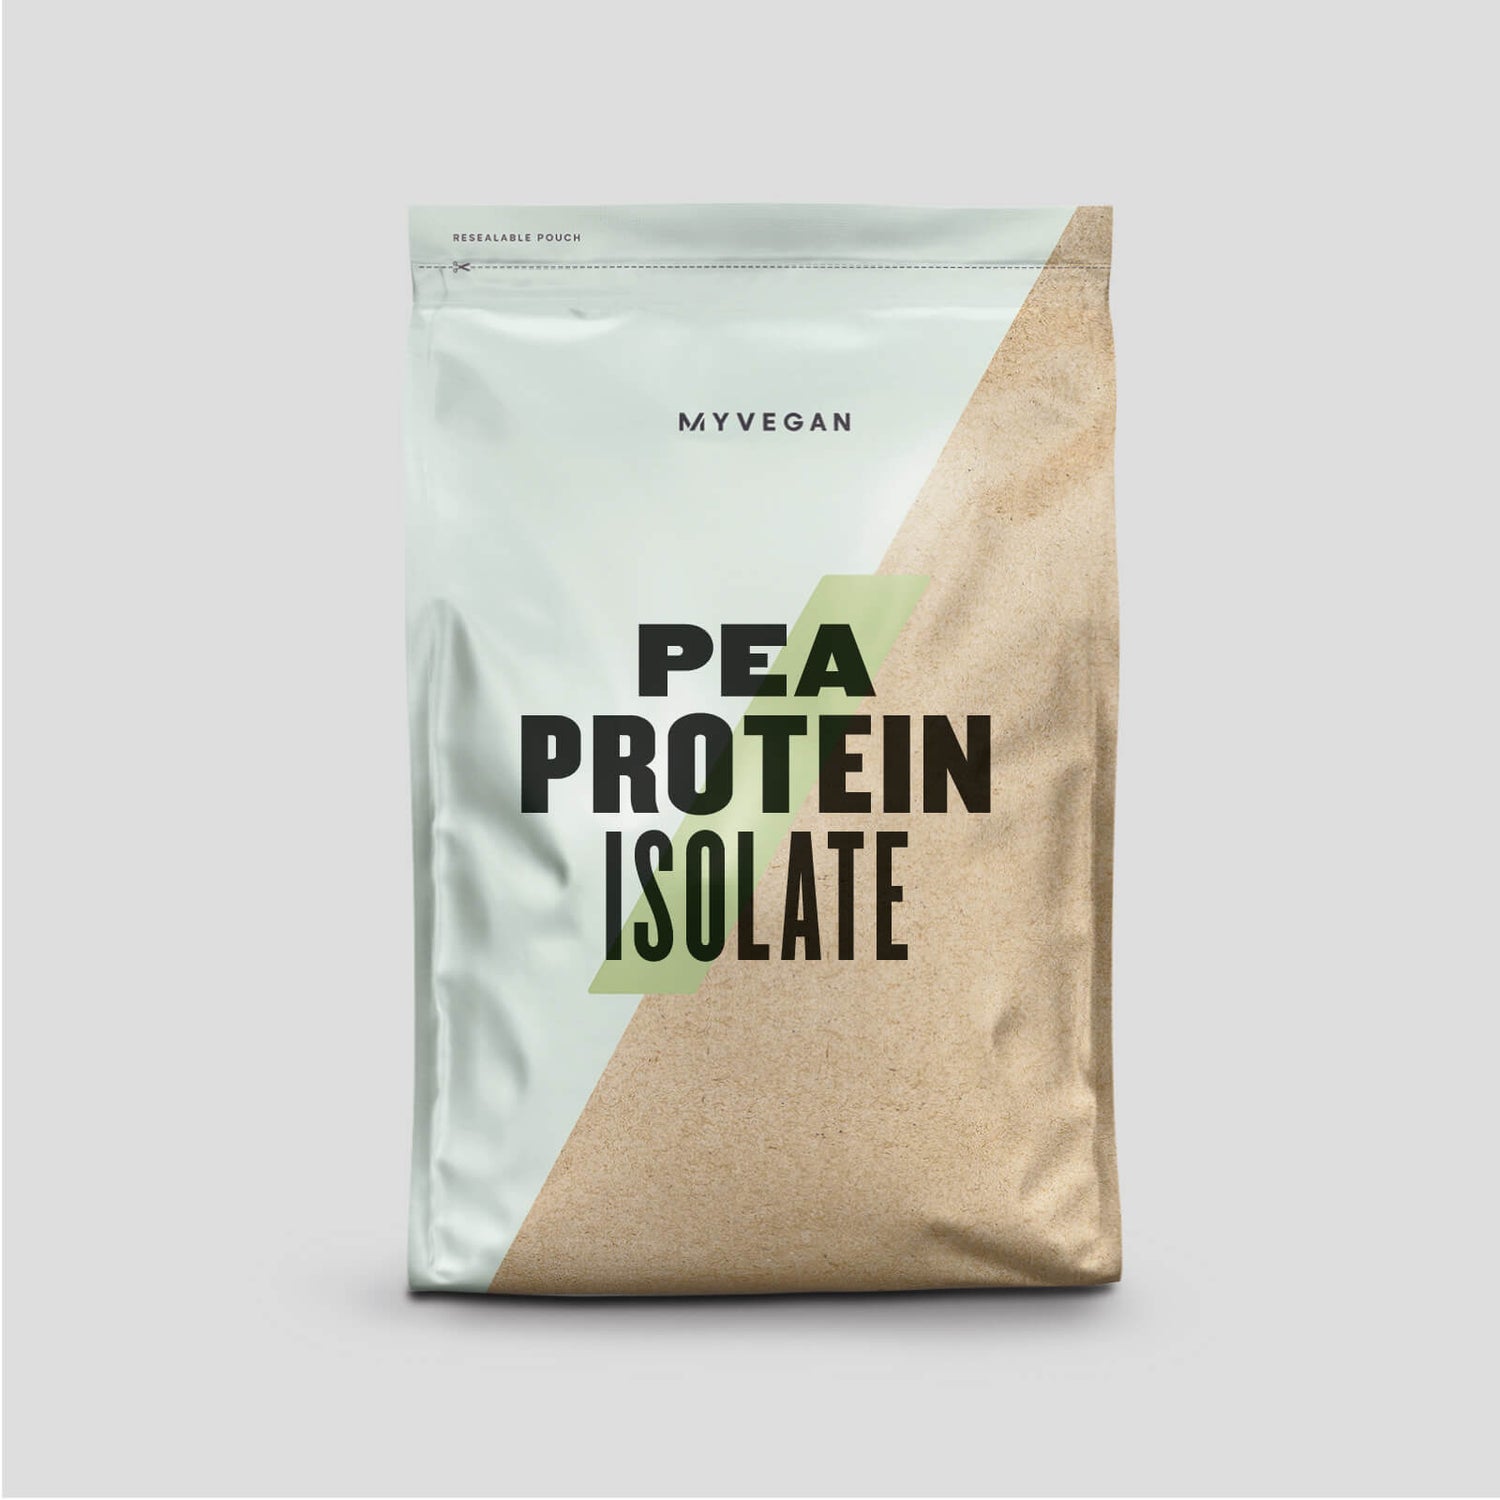 Aislado de Proteína de Guisante - 1kg - Cafe y Nueces